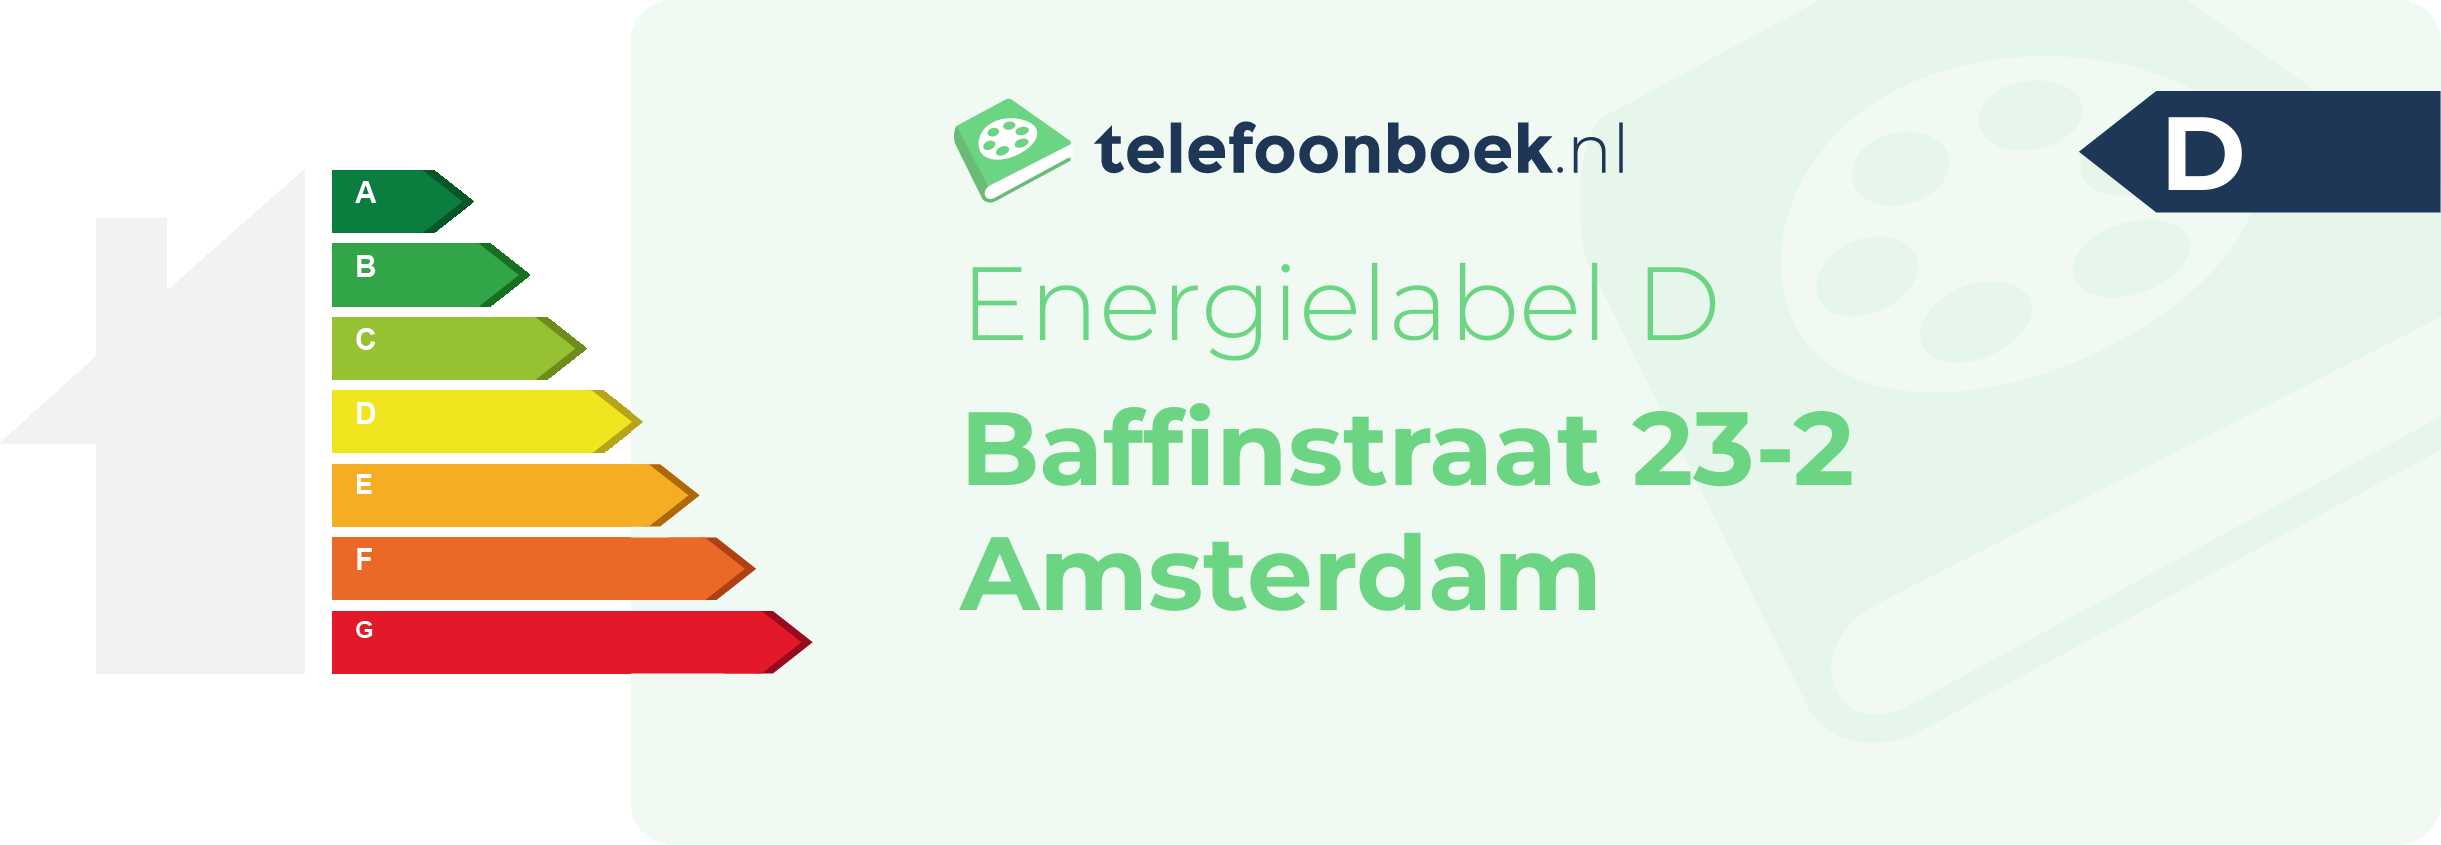 Energielabel Baffinstraat 23-2 Amsterdam